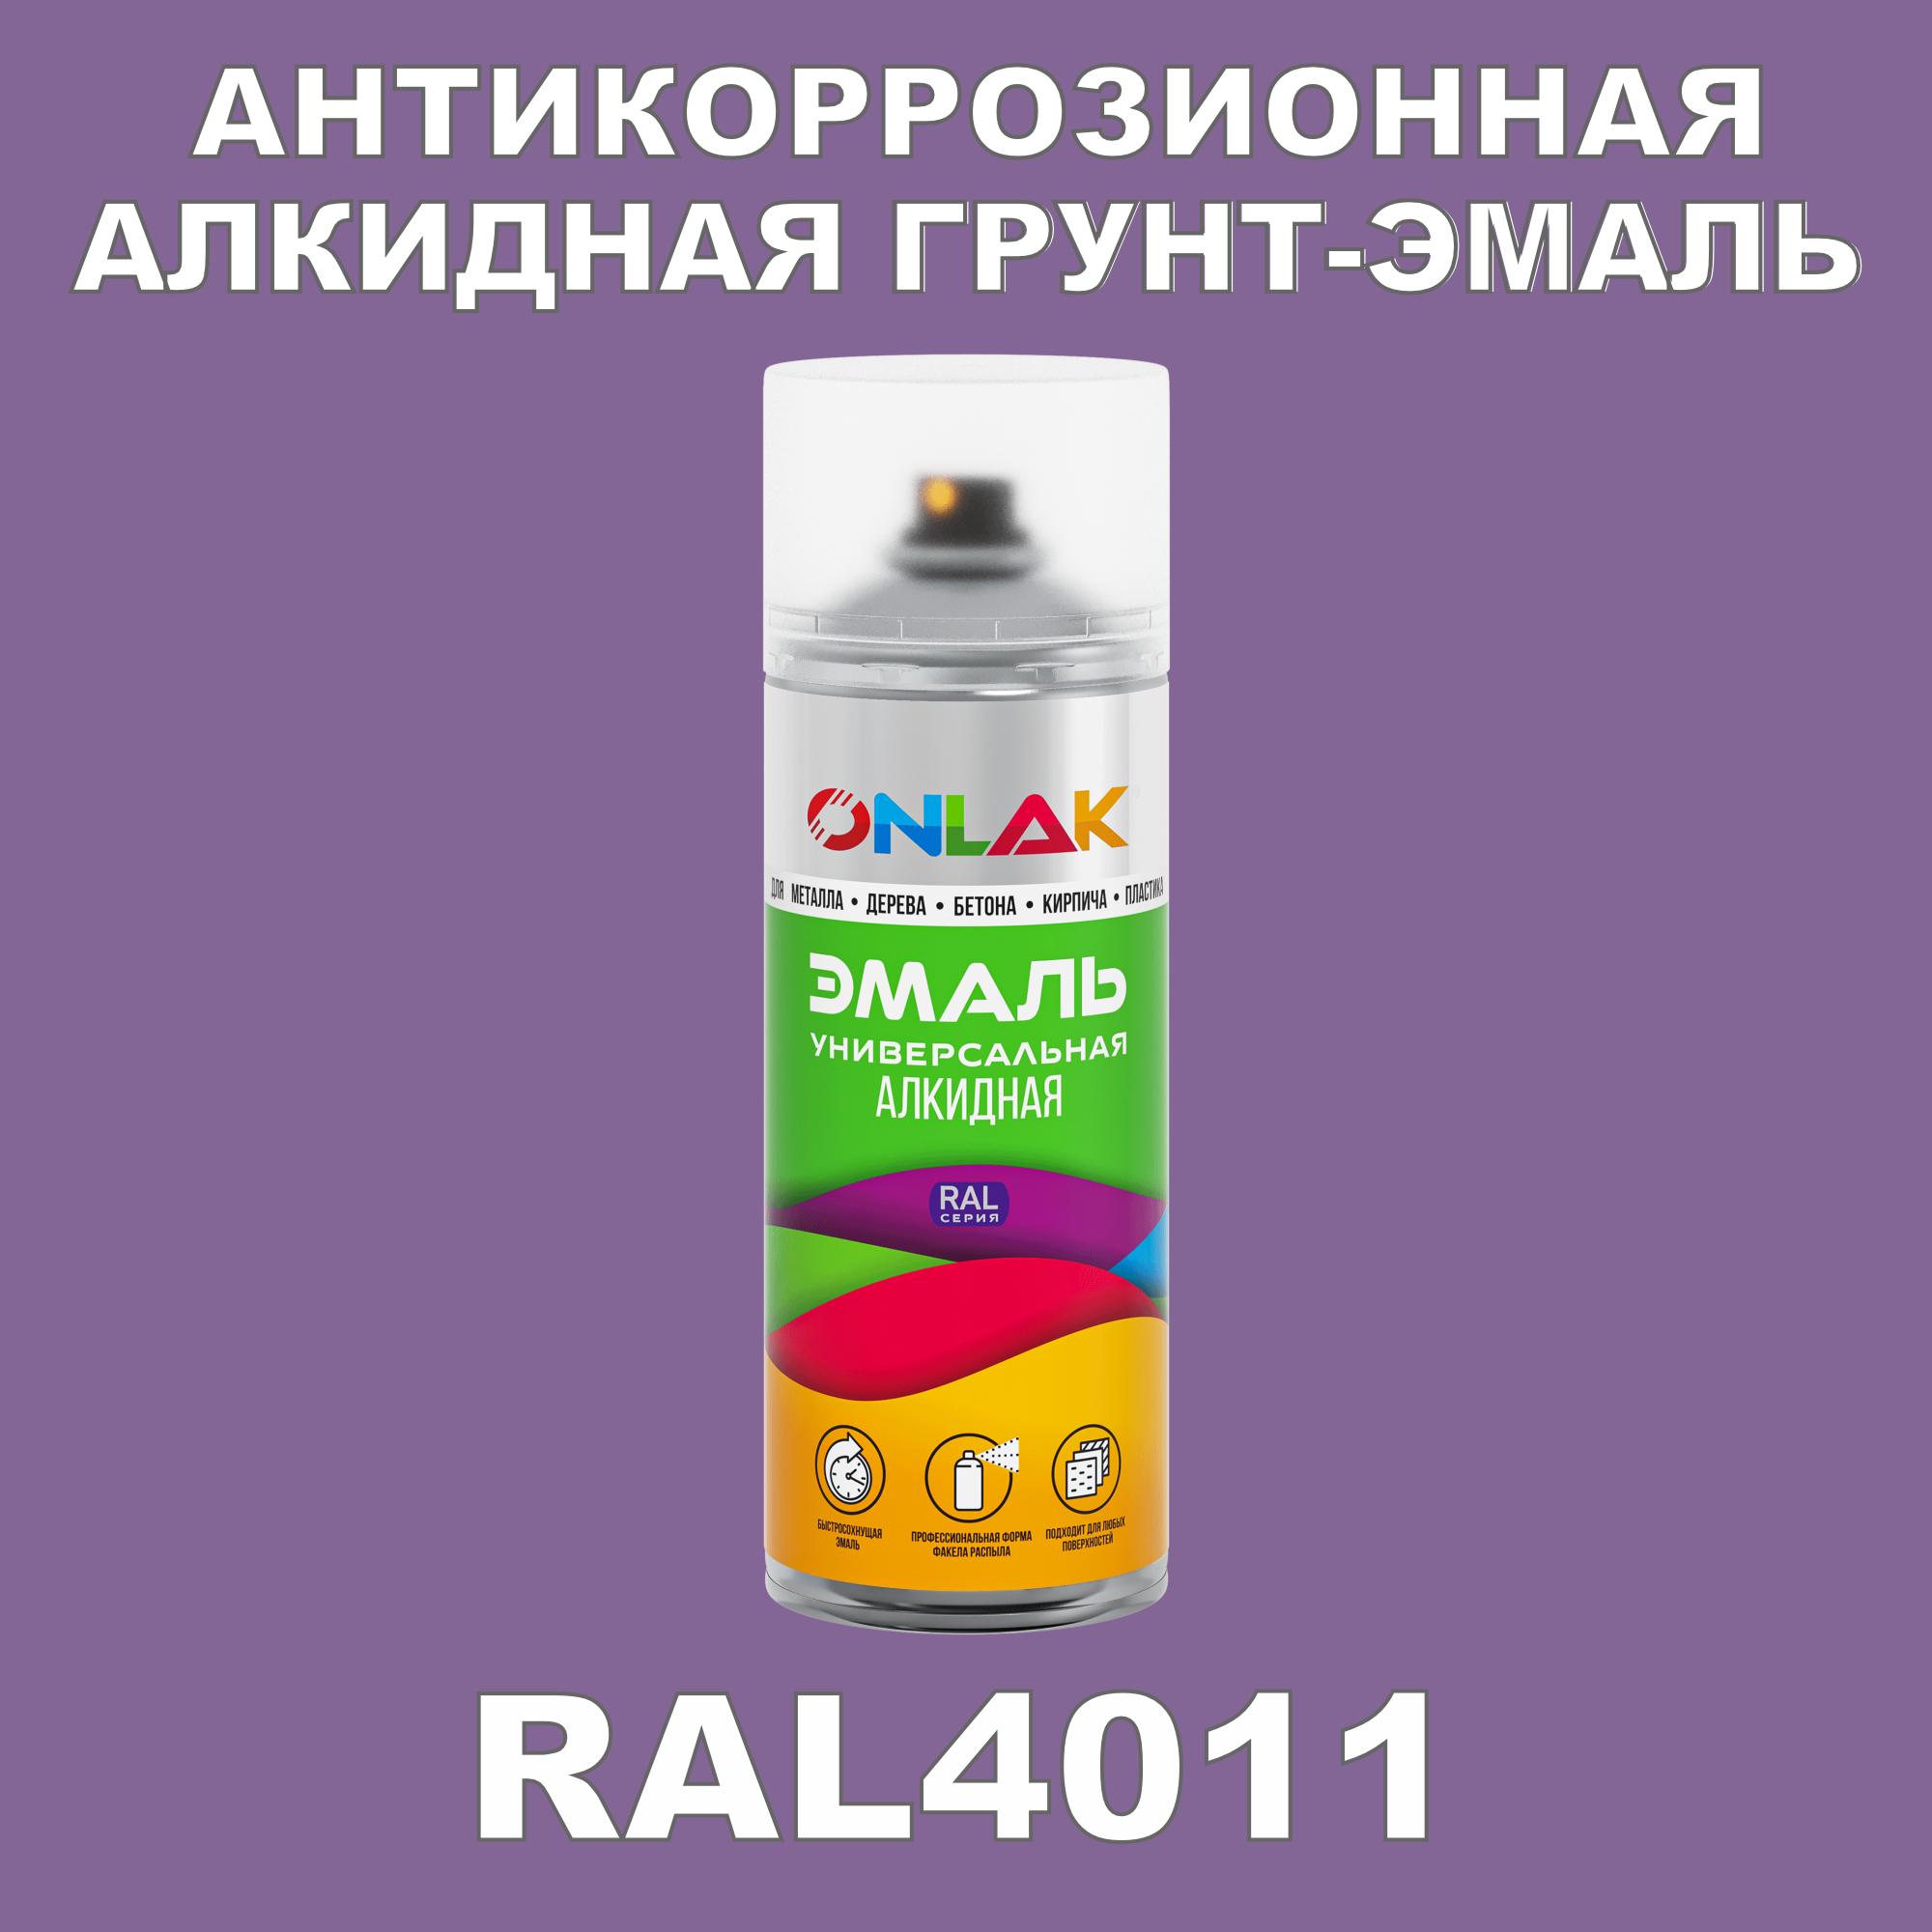 Антикоррозионная грунт-эмаль ONLAK RAL 4011,фиолетовый,550 мл artuniq color violet ной грунт для аквариума фиолетовый 9 кг